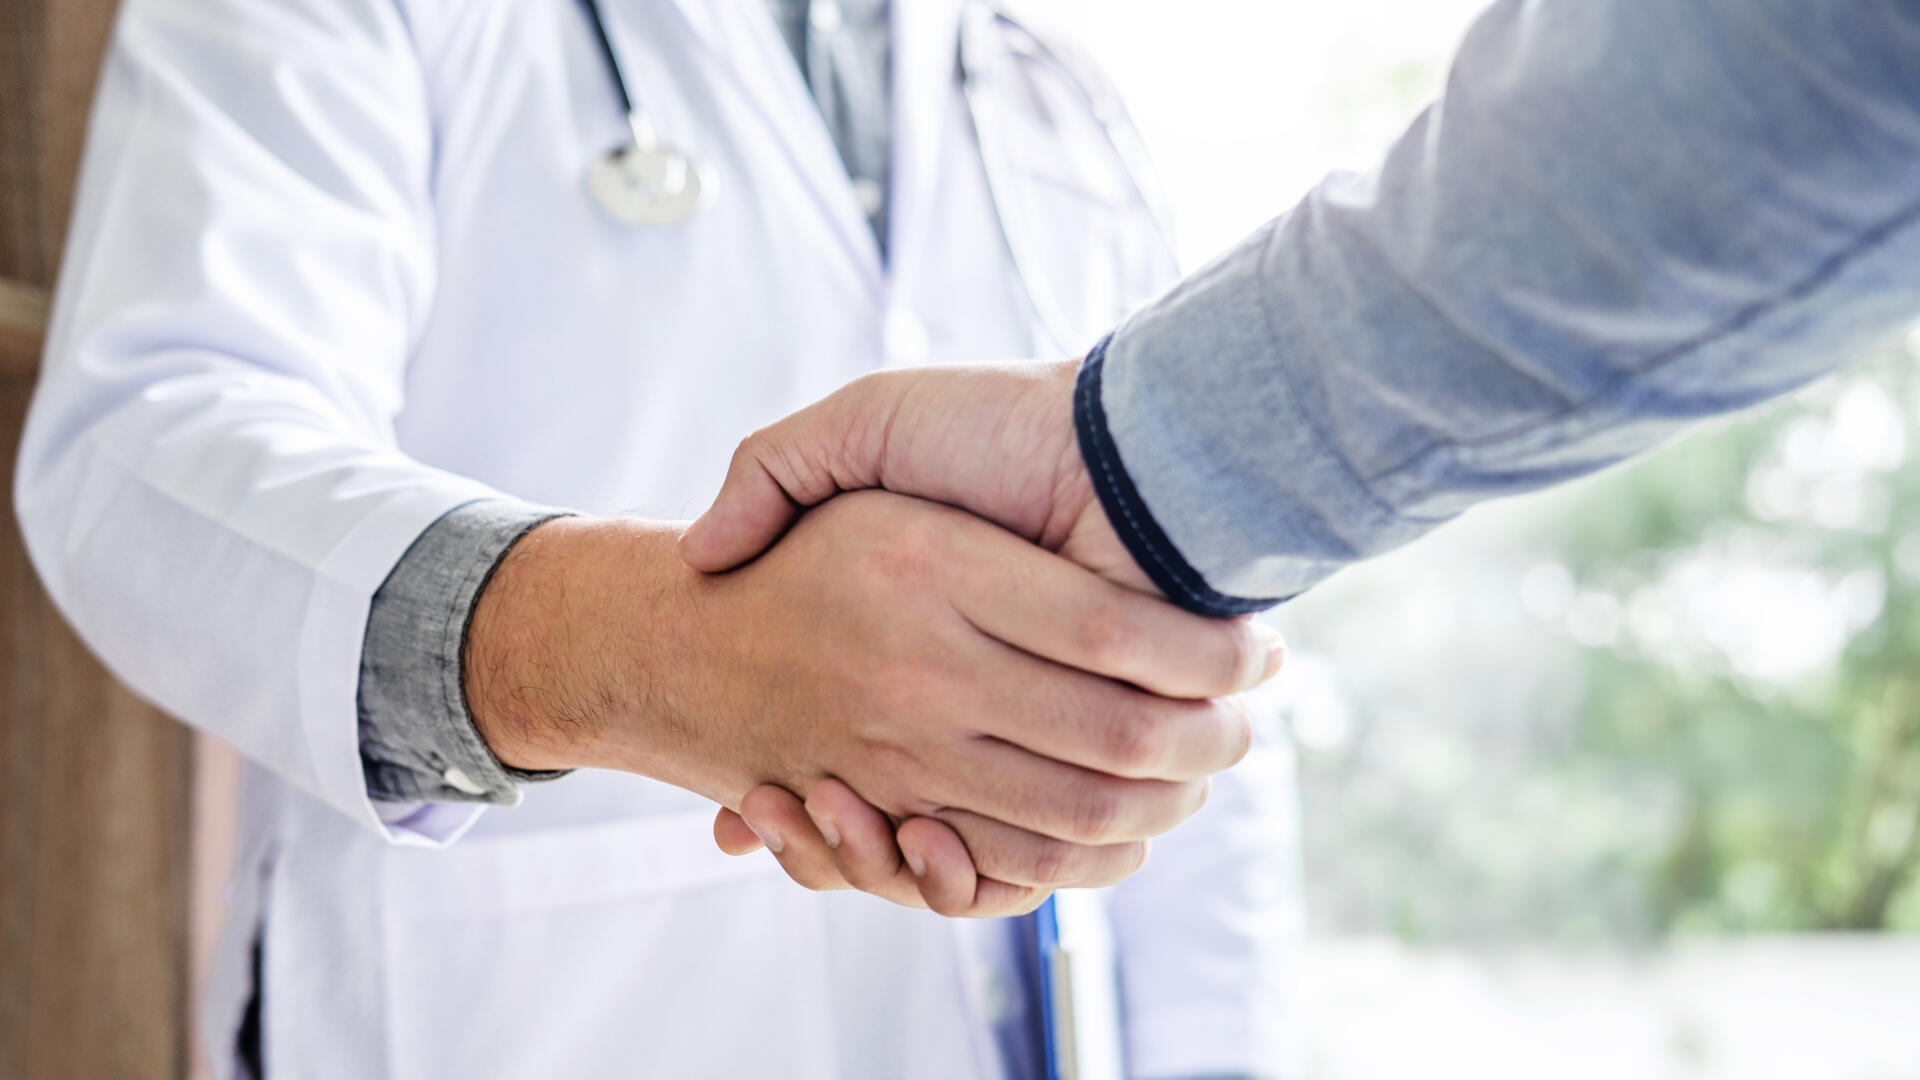 Doctor in white coat handshake with patient